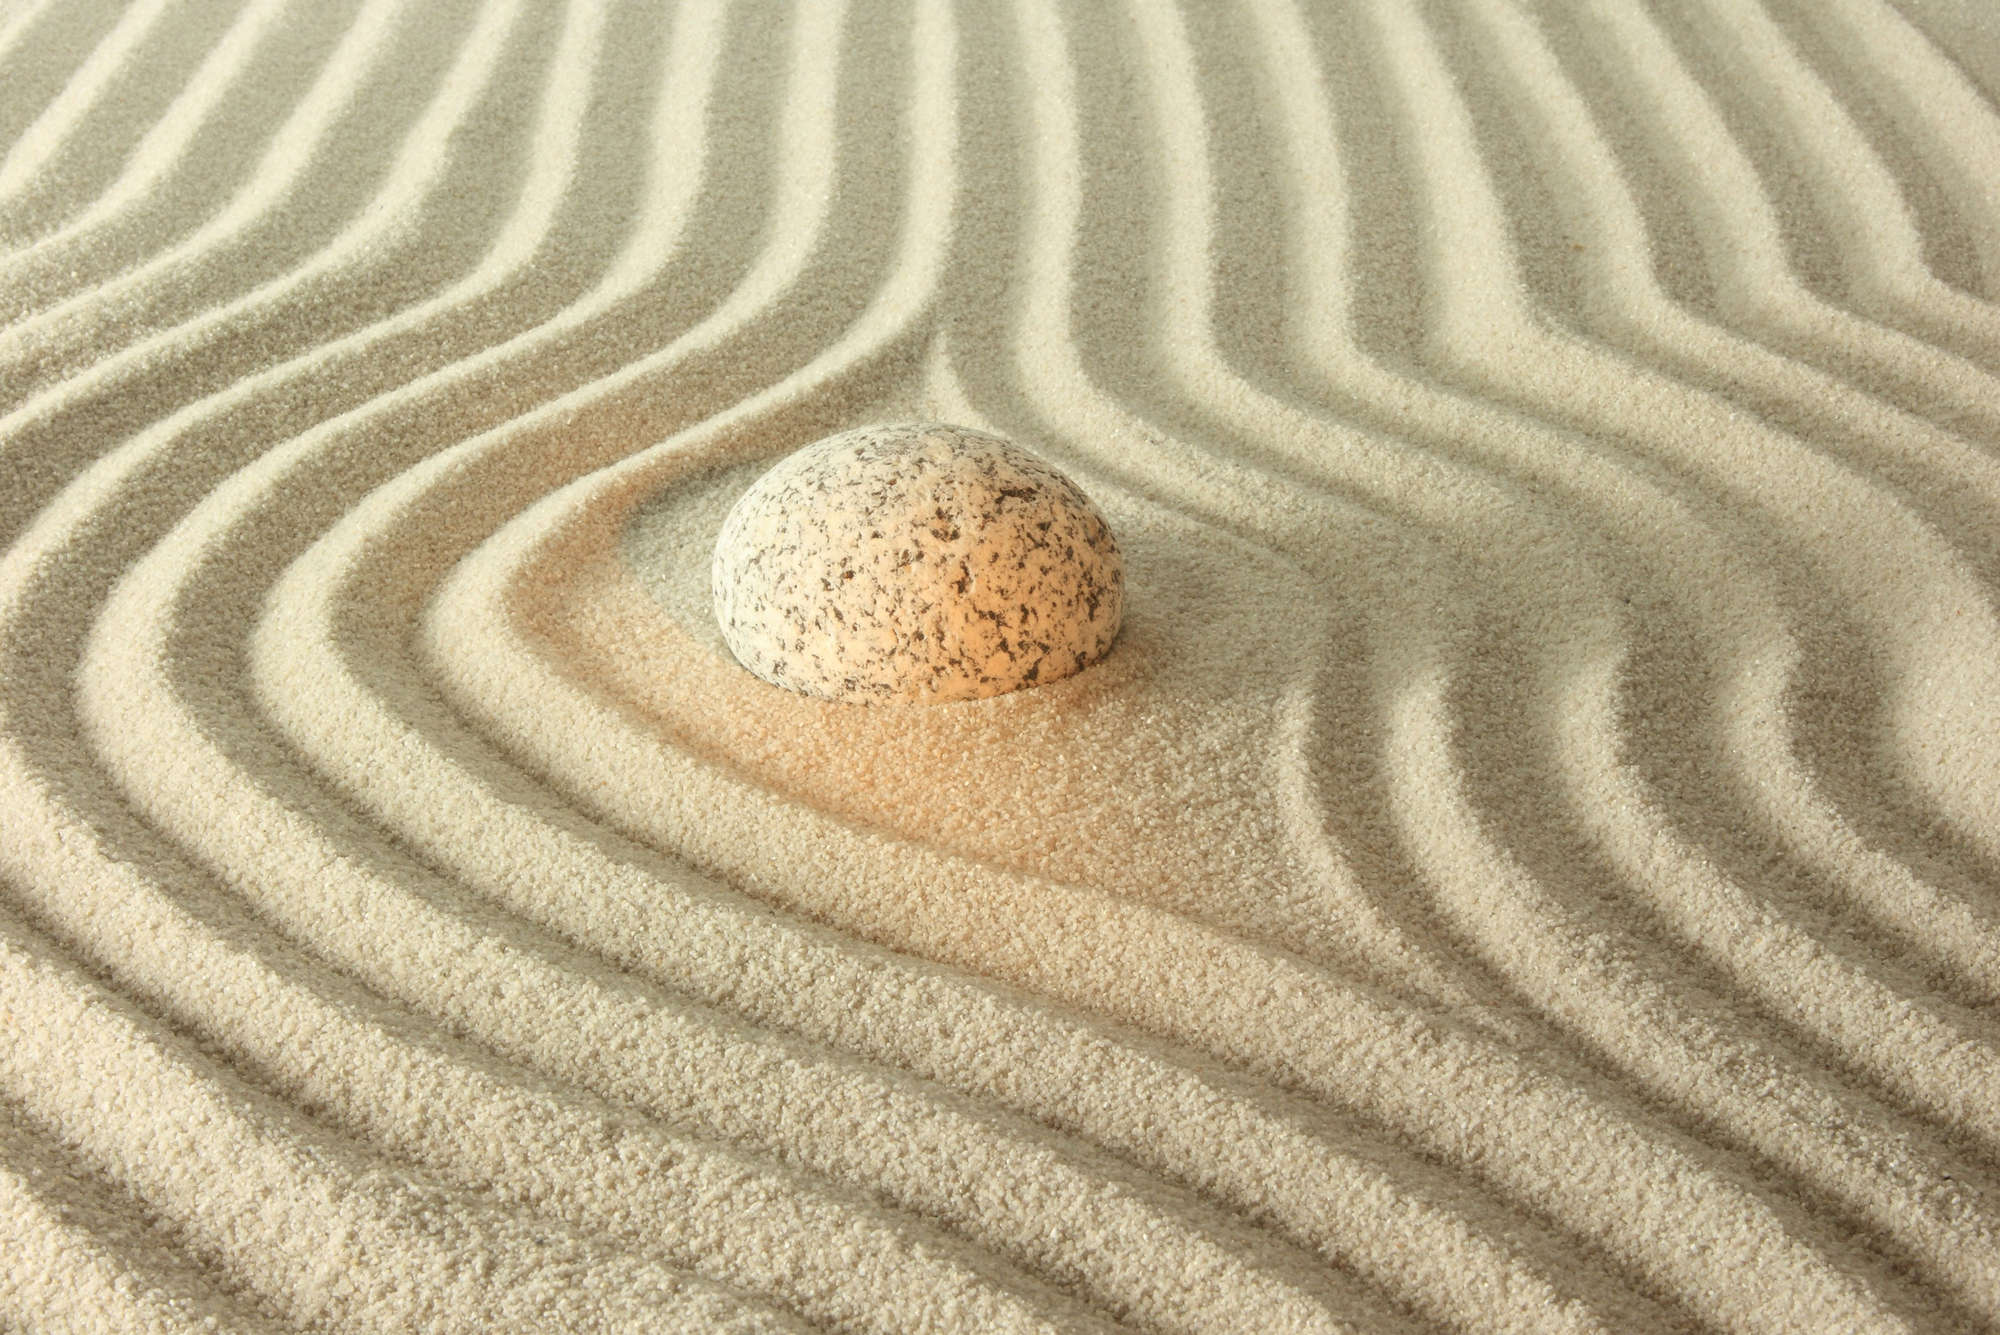             Digital behang gloeiende steen in het zand - Matte gladde vlieseline
        